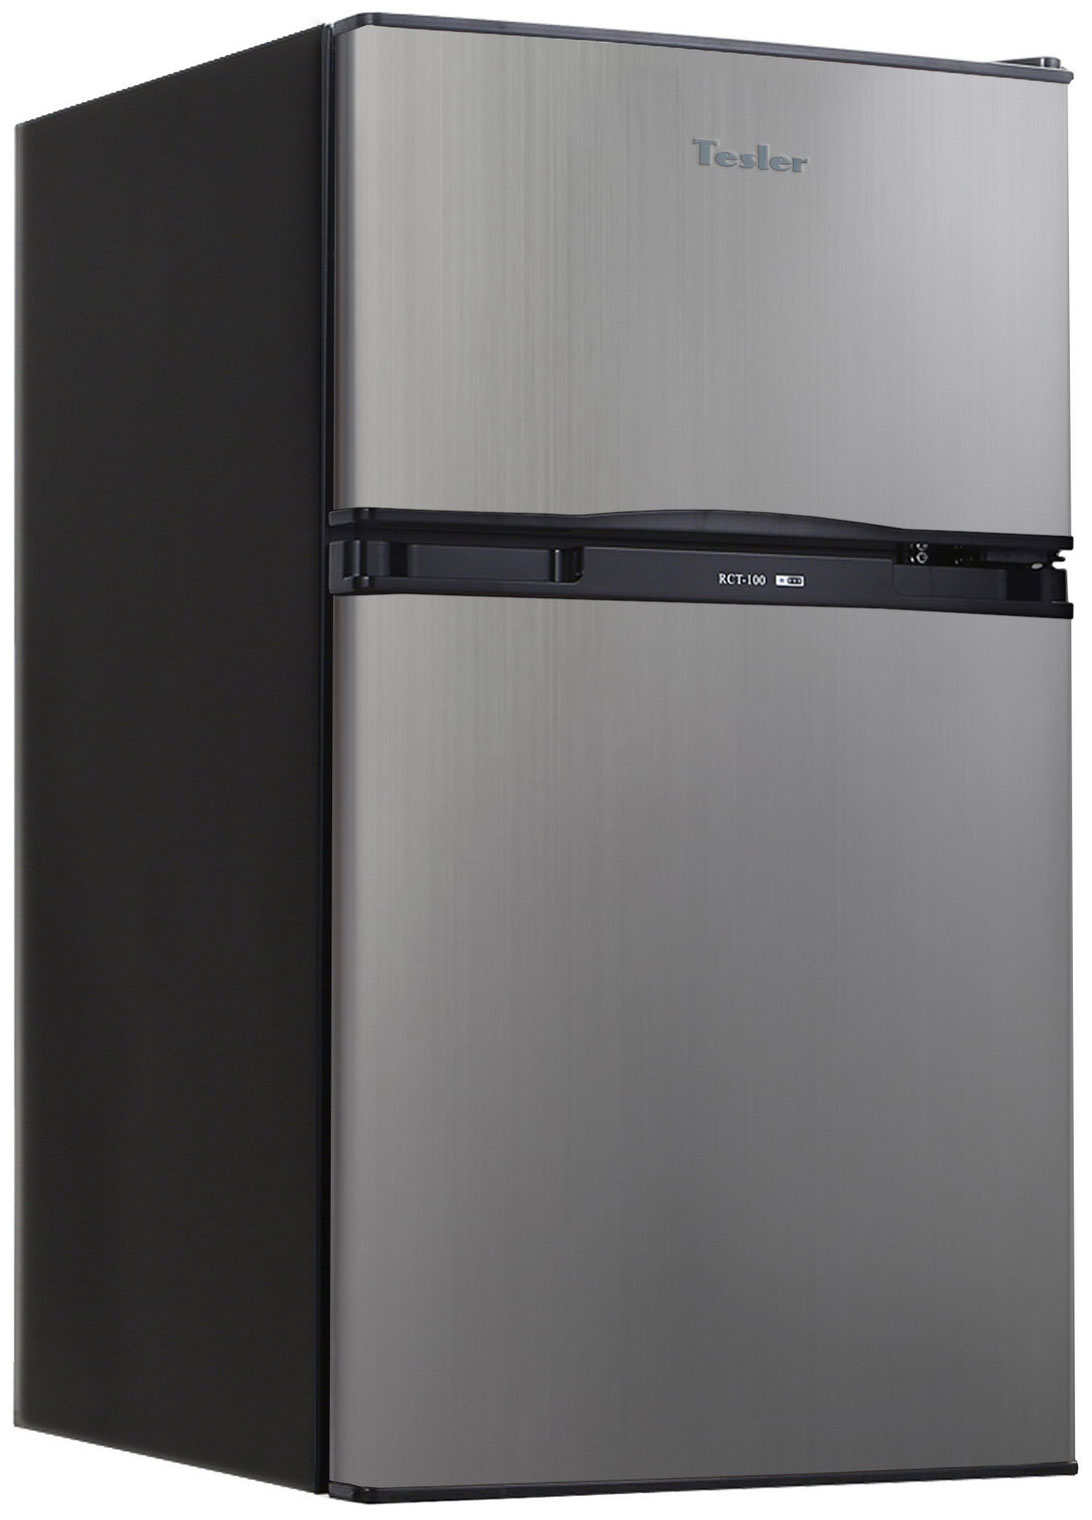 Двухкамерный холодильник TESLER RCT-100 GRAPHITE двухкамерный холодильник tesler rct 100 champagne